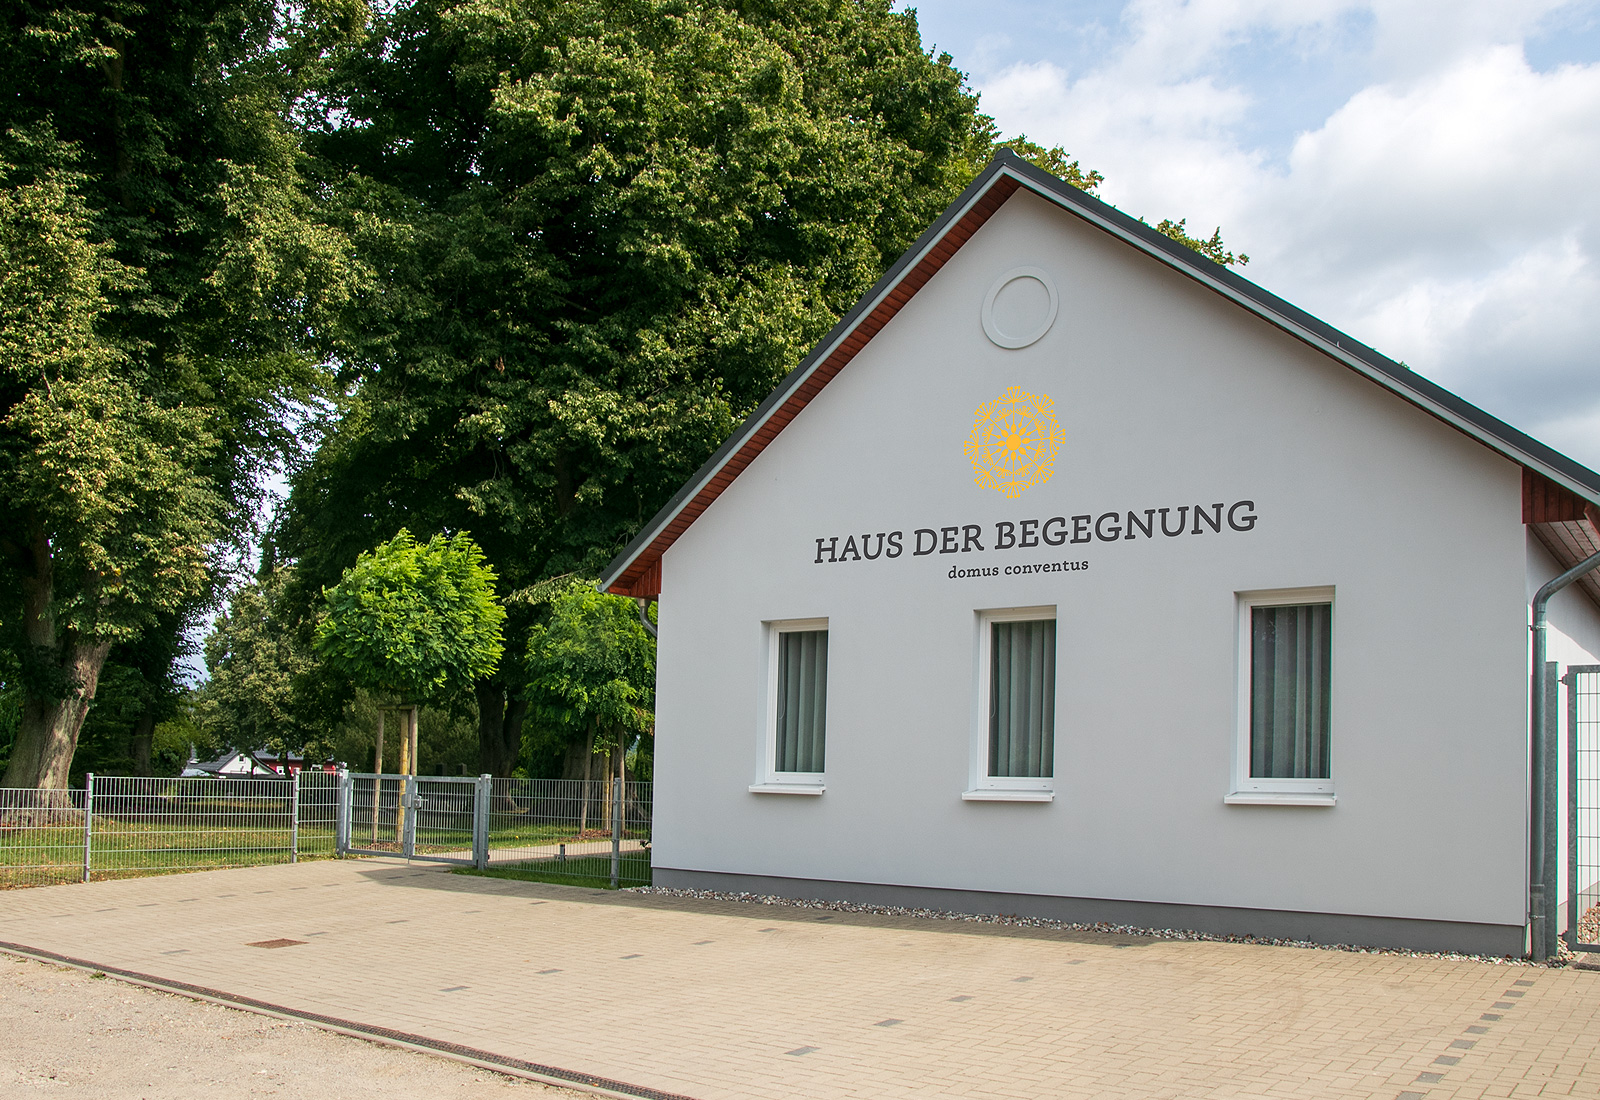 Haus der Begegnung in Kröslin, Gibelseite mit Beschriftung